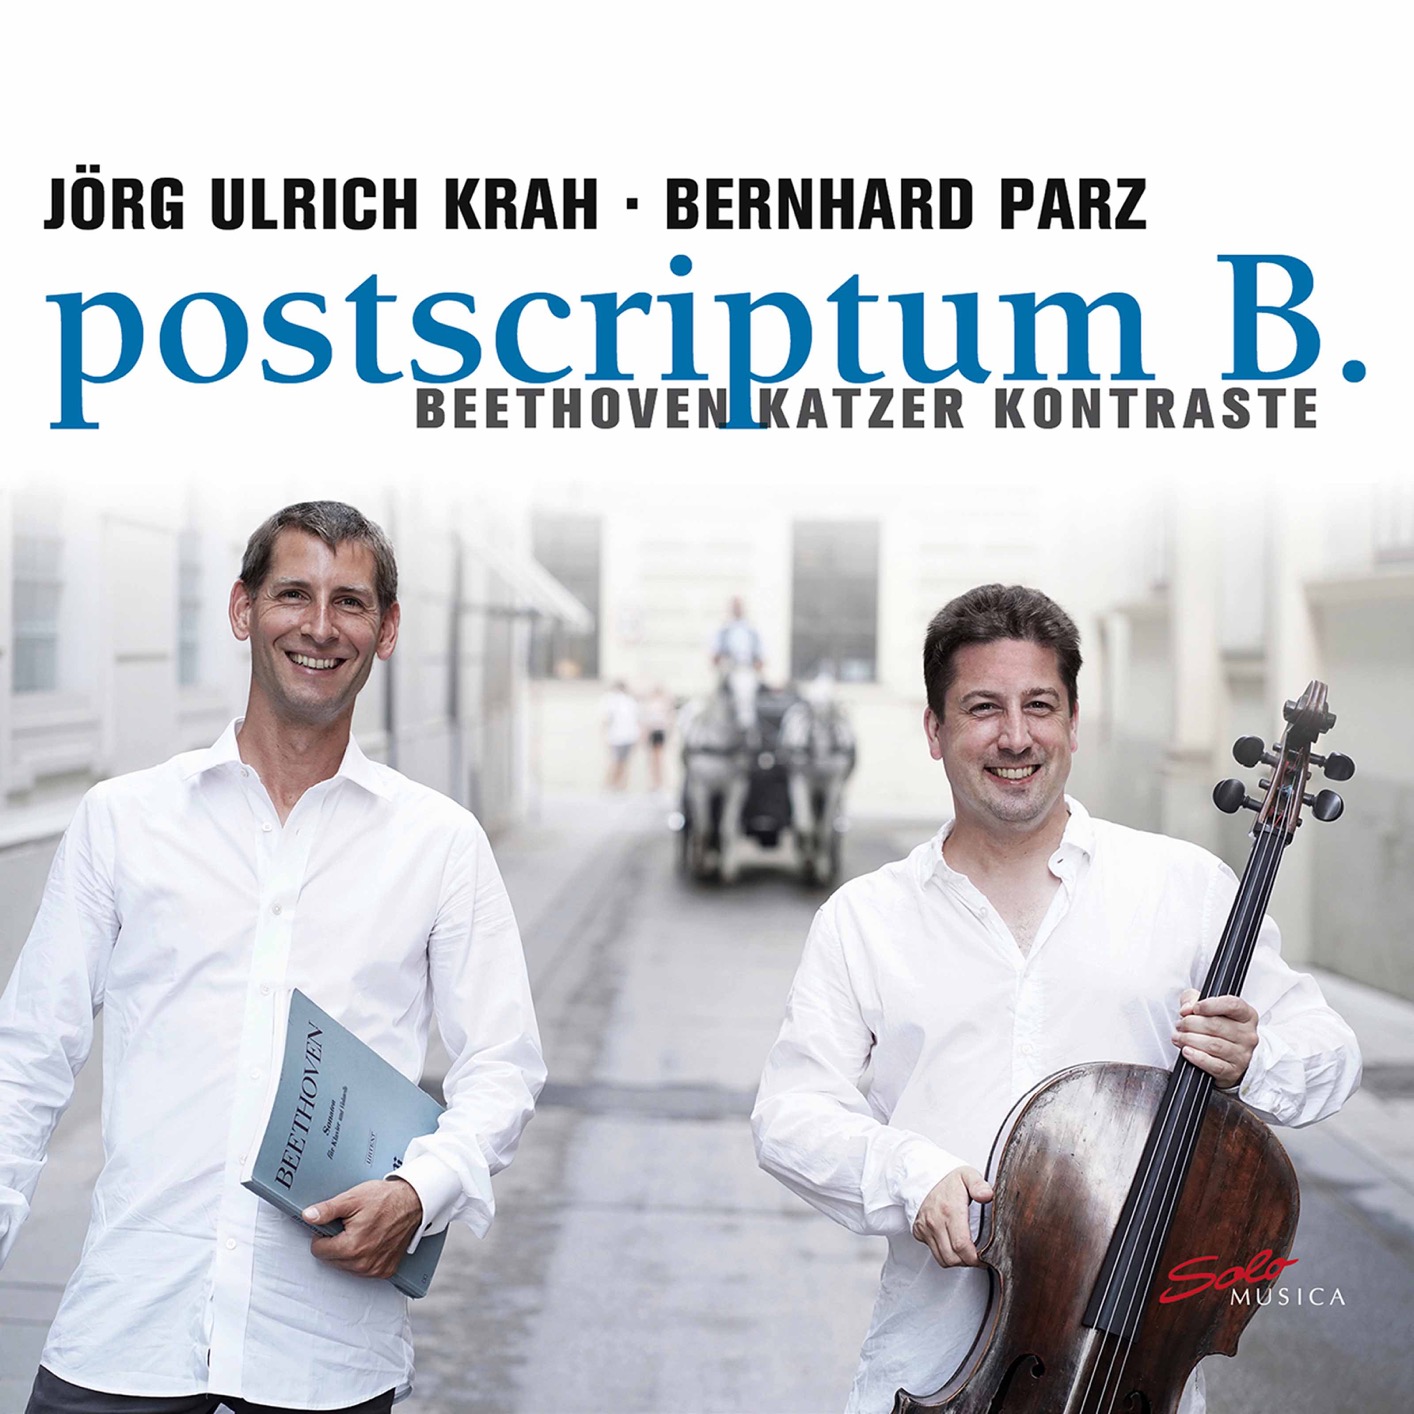 Jorg Ulrich Krah & Bernhard Parz – Postscriptum B. (2020) [FLAC 24bit/96kHz]